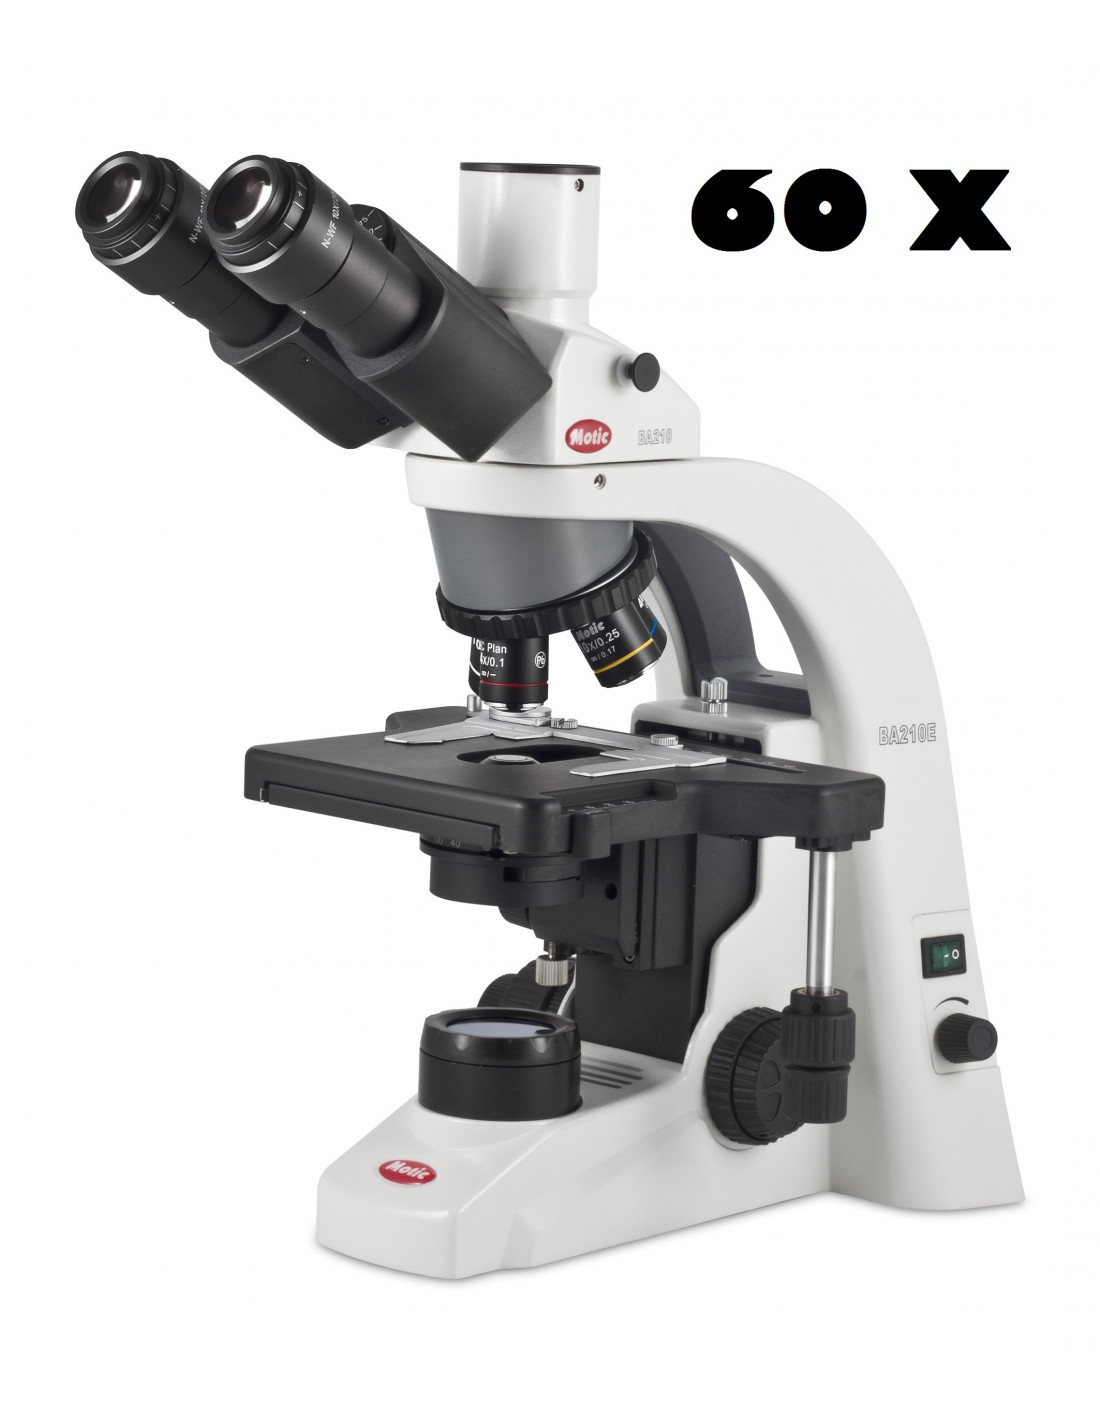 Kit de microscope de poche éducatif pour enfants avec microscope